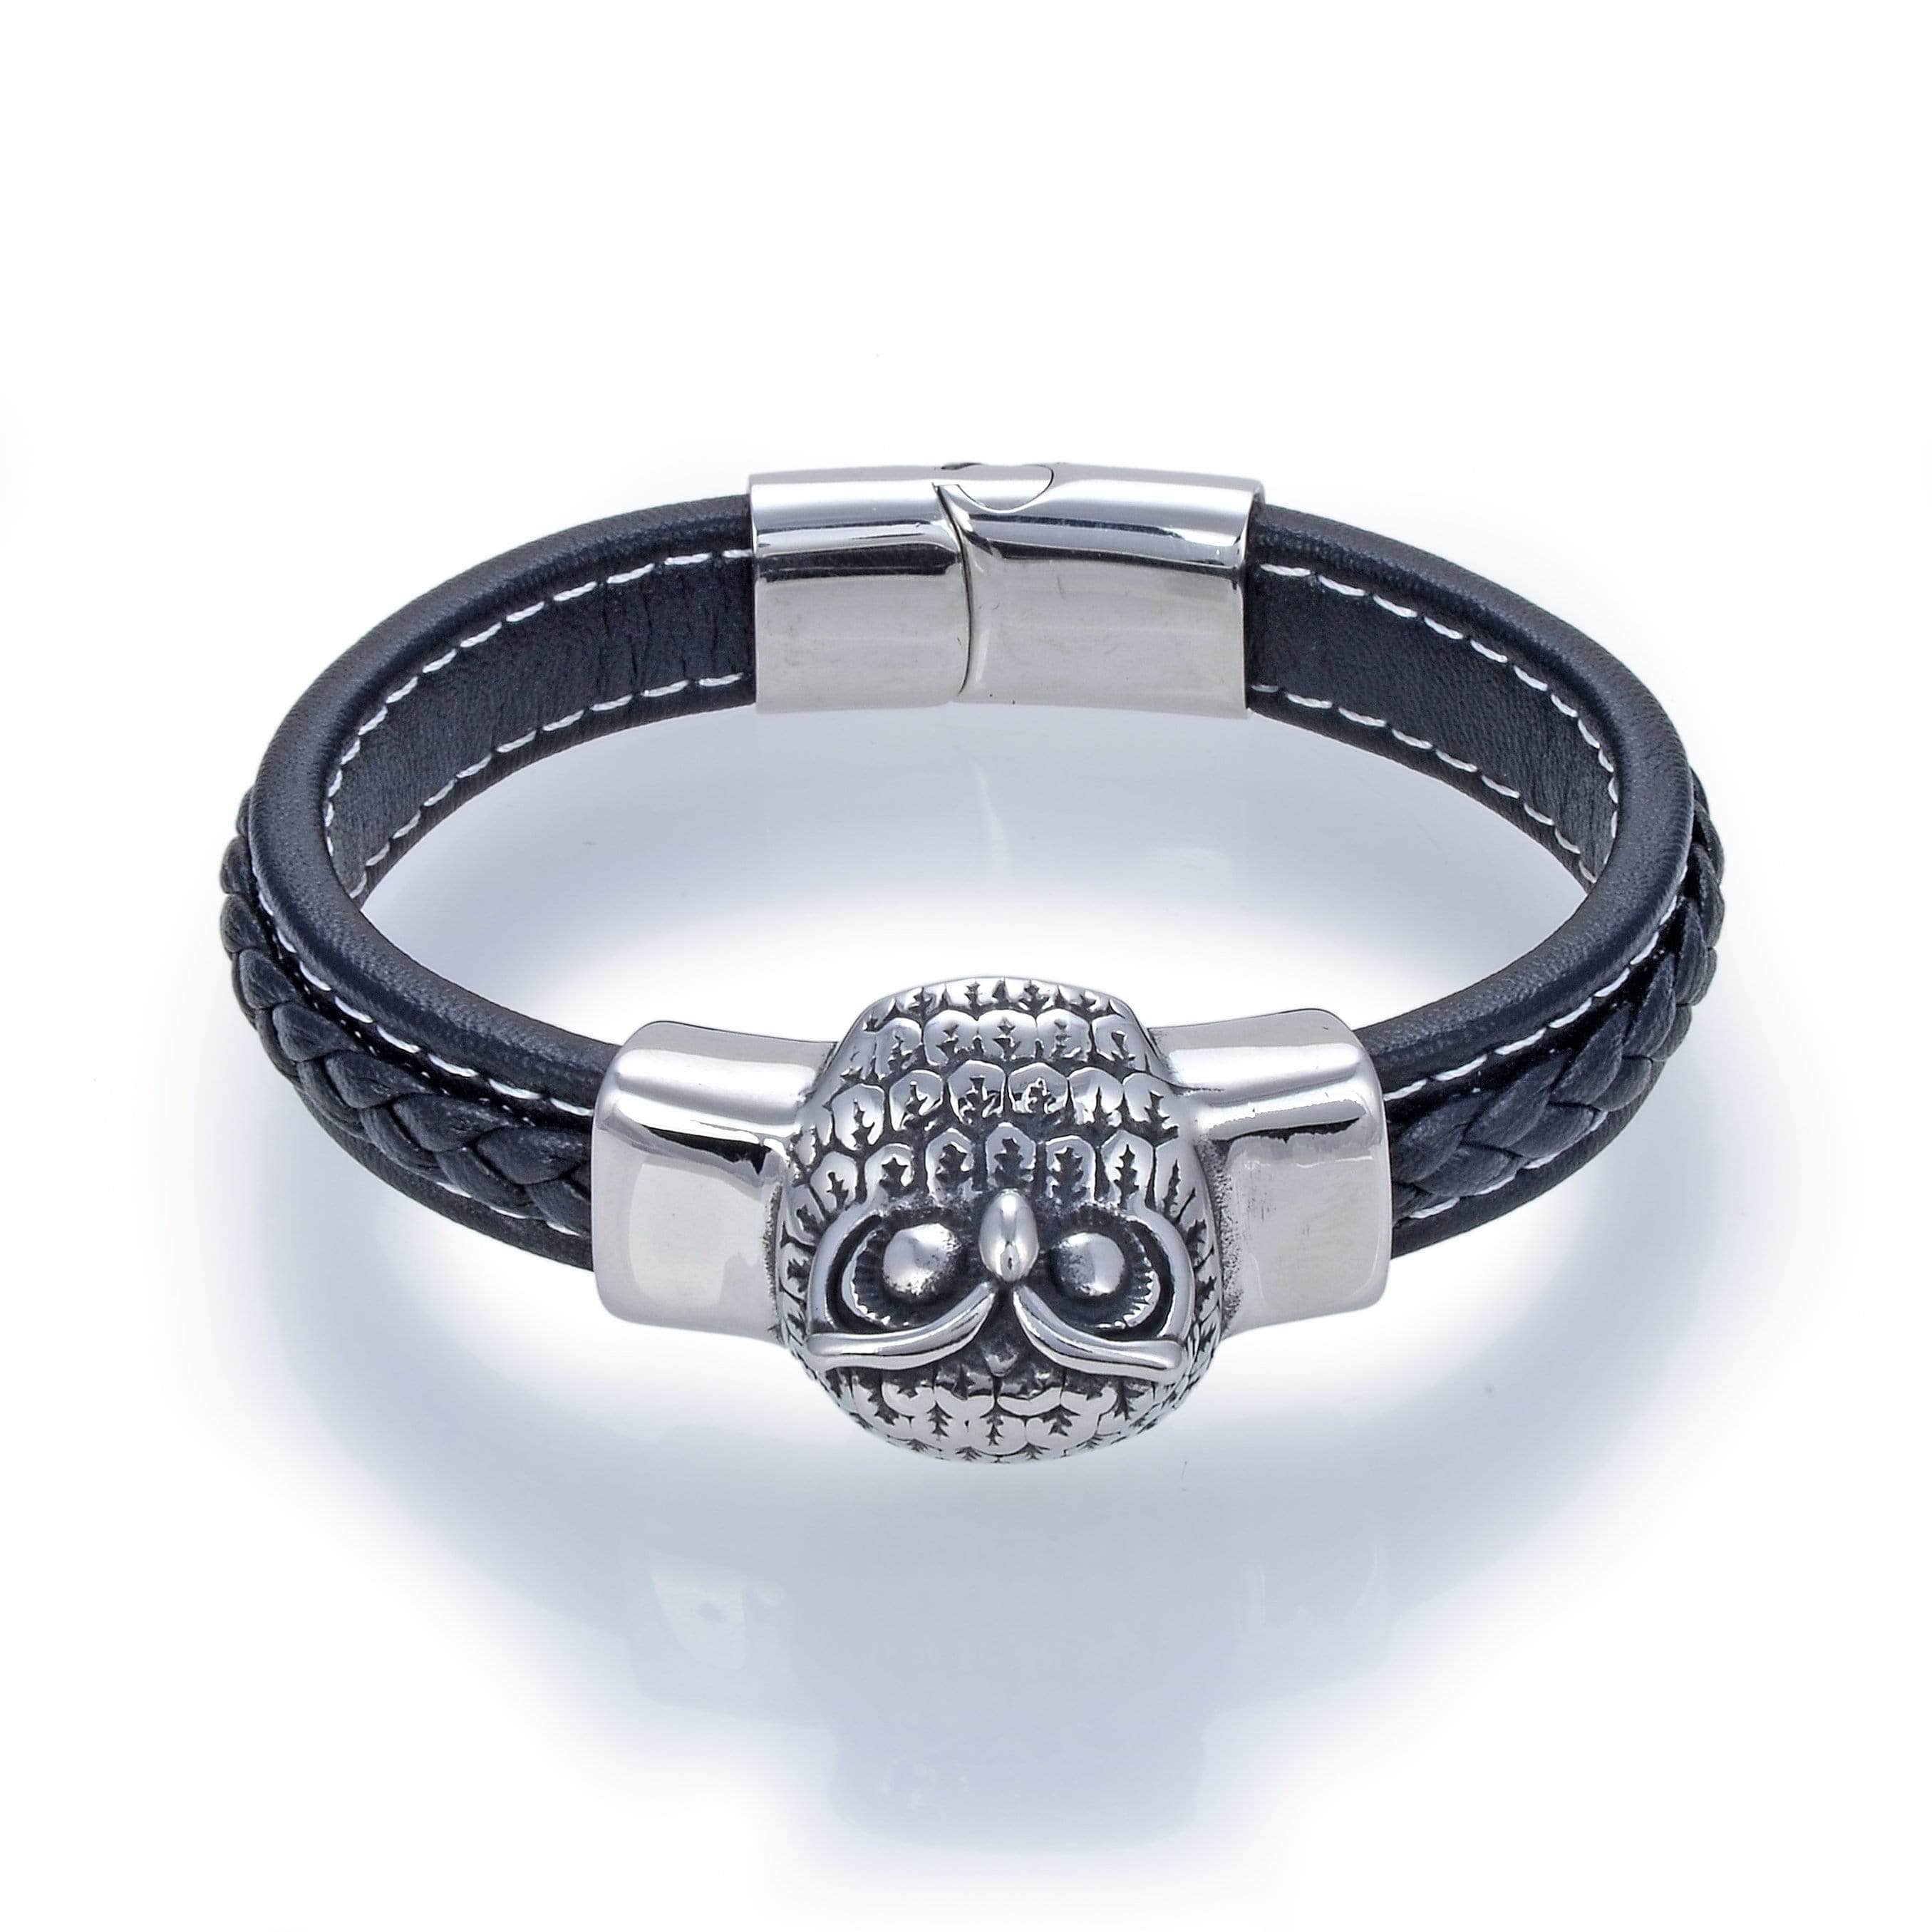 Kalifano Steel Hearts Jewelry Steel Hearts Owl Black Leather Bracelet SHB200-125